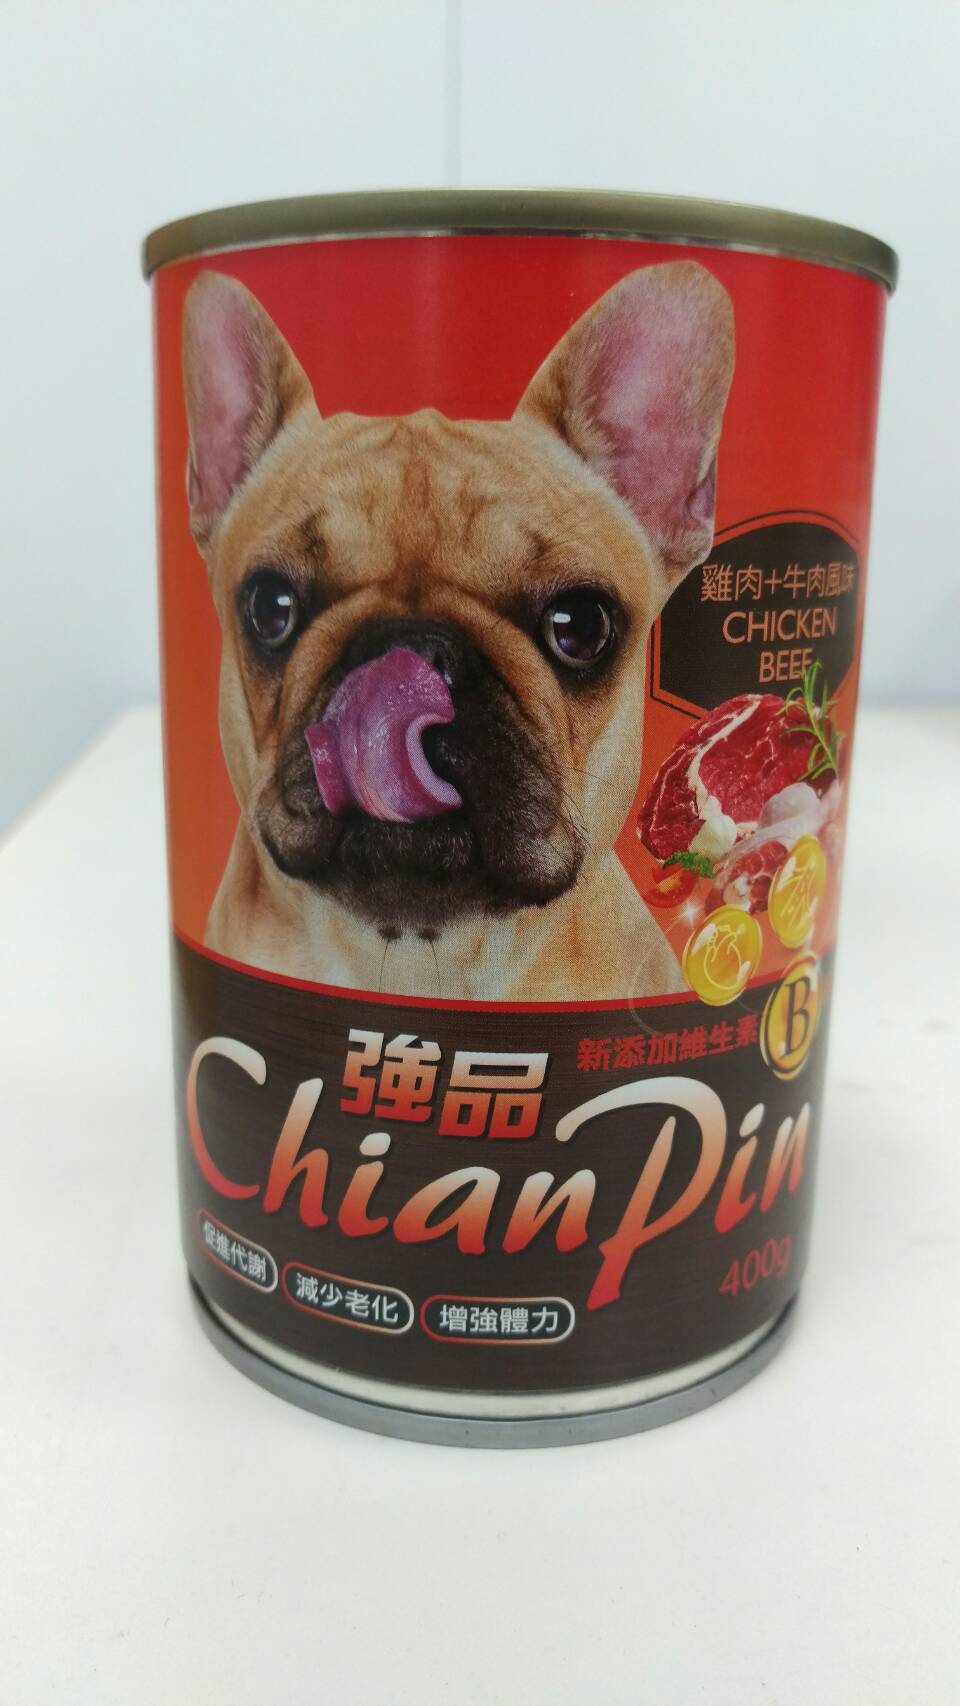 強品犬罐-雞肉+牛肉風味
Chian Pin dog can- chicken+beef